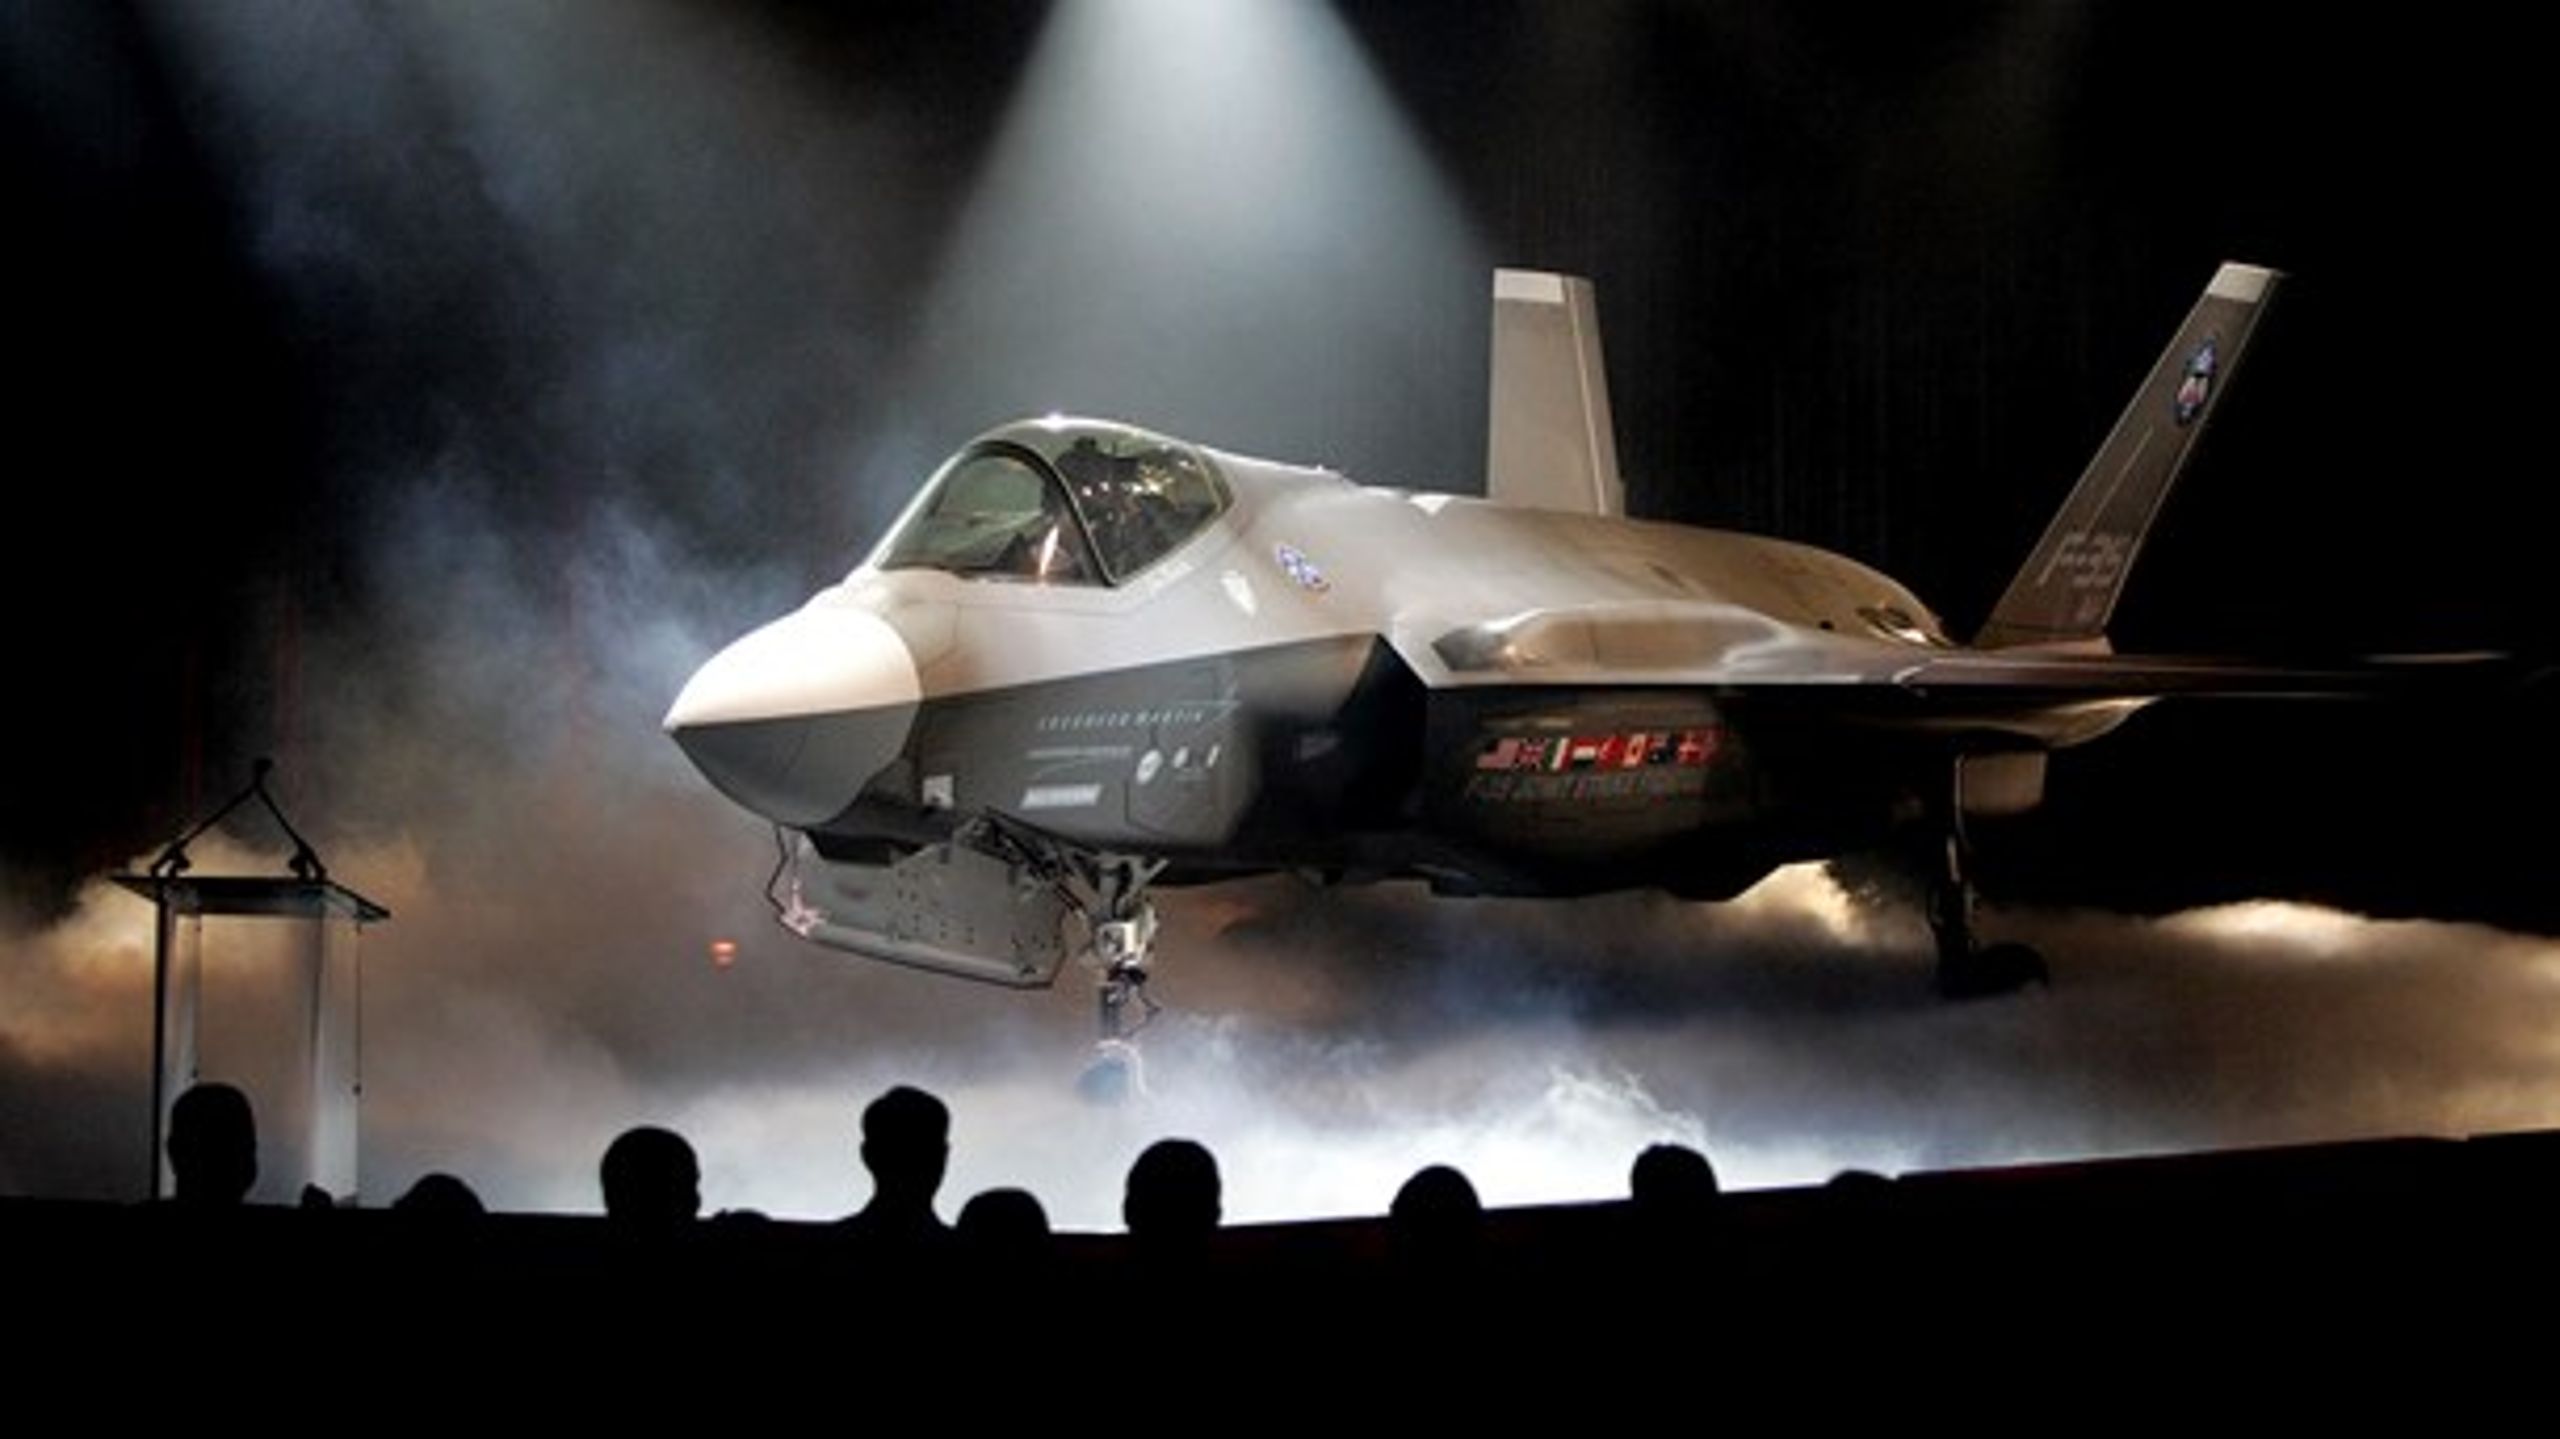 Lockheed Martin F-35 til udstilling. Er investeringer i våben og tobak forenelige med fondes ønsker om at forandre verden til det bedre?<br>